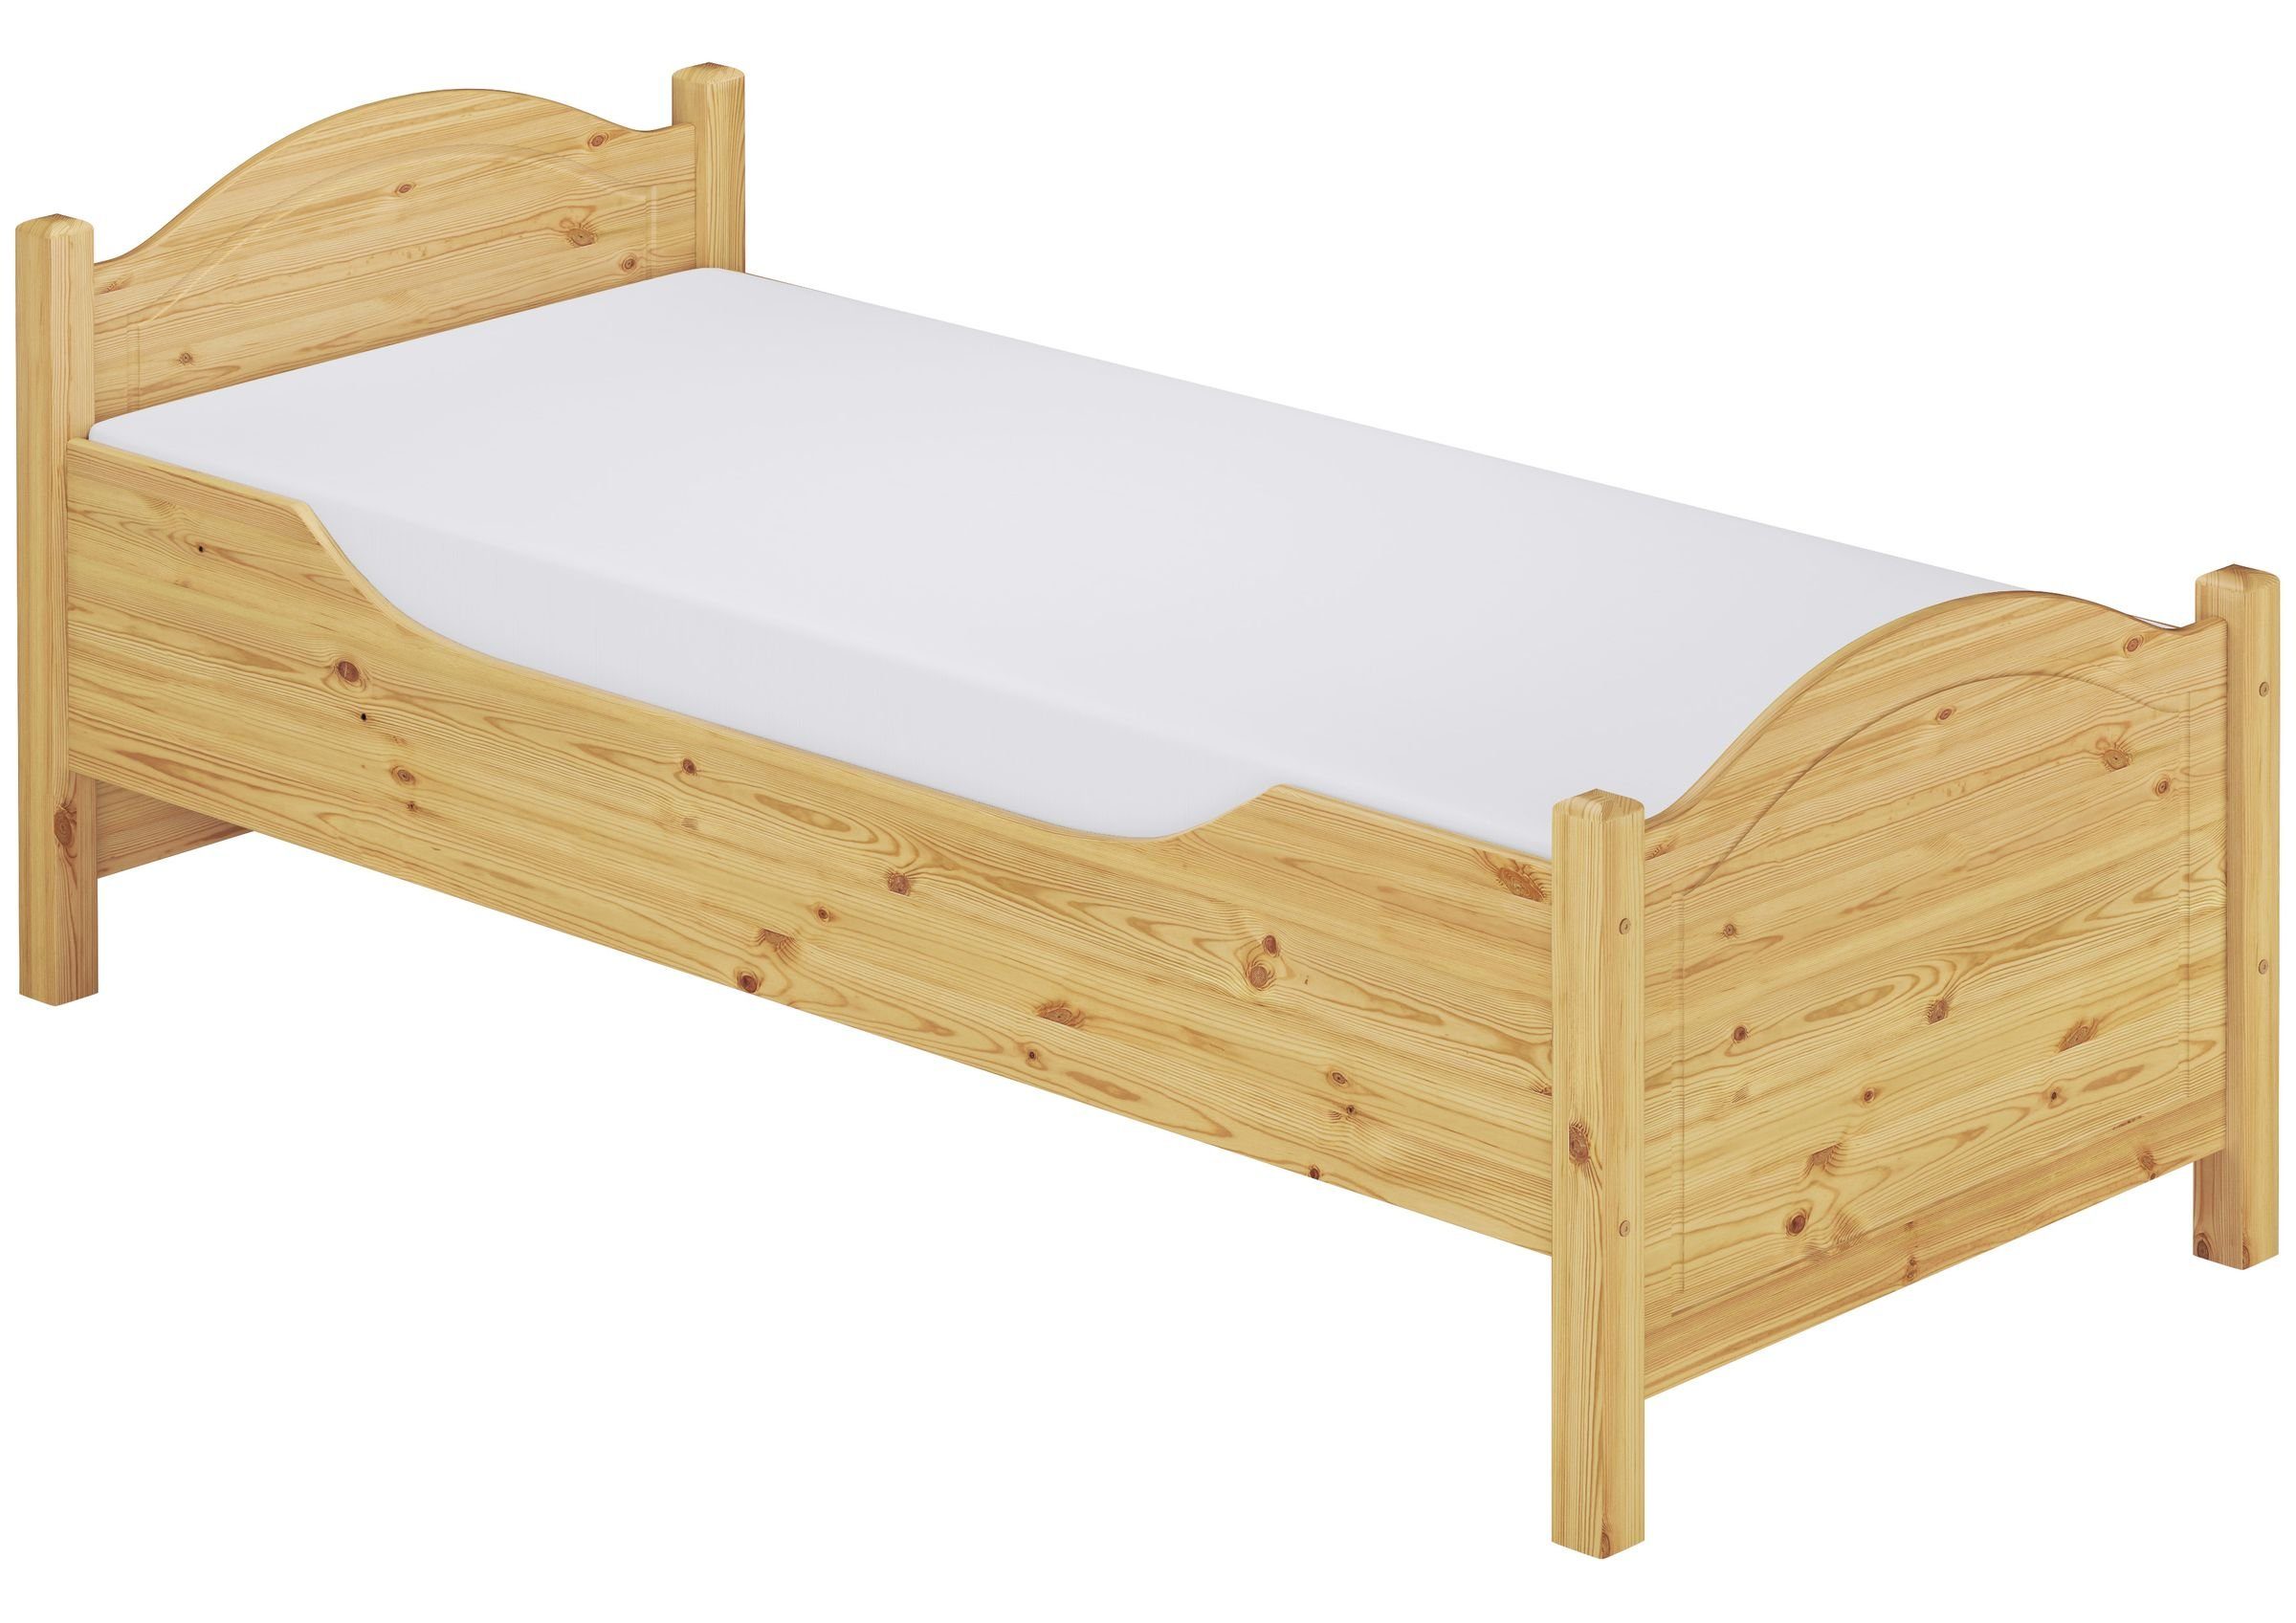 und Einzelbett Matratze, Federholzrahmen 120x220 für Senioren ERST-HOLZ mit Kieferfarblos Holzbett lackiert